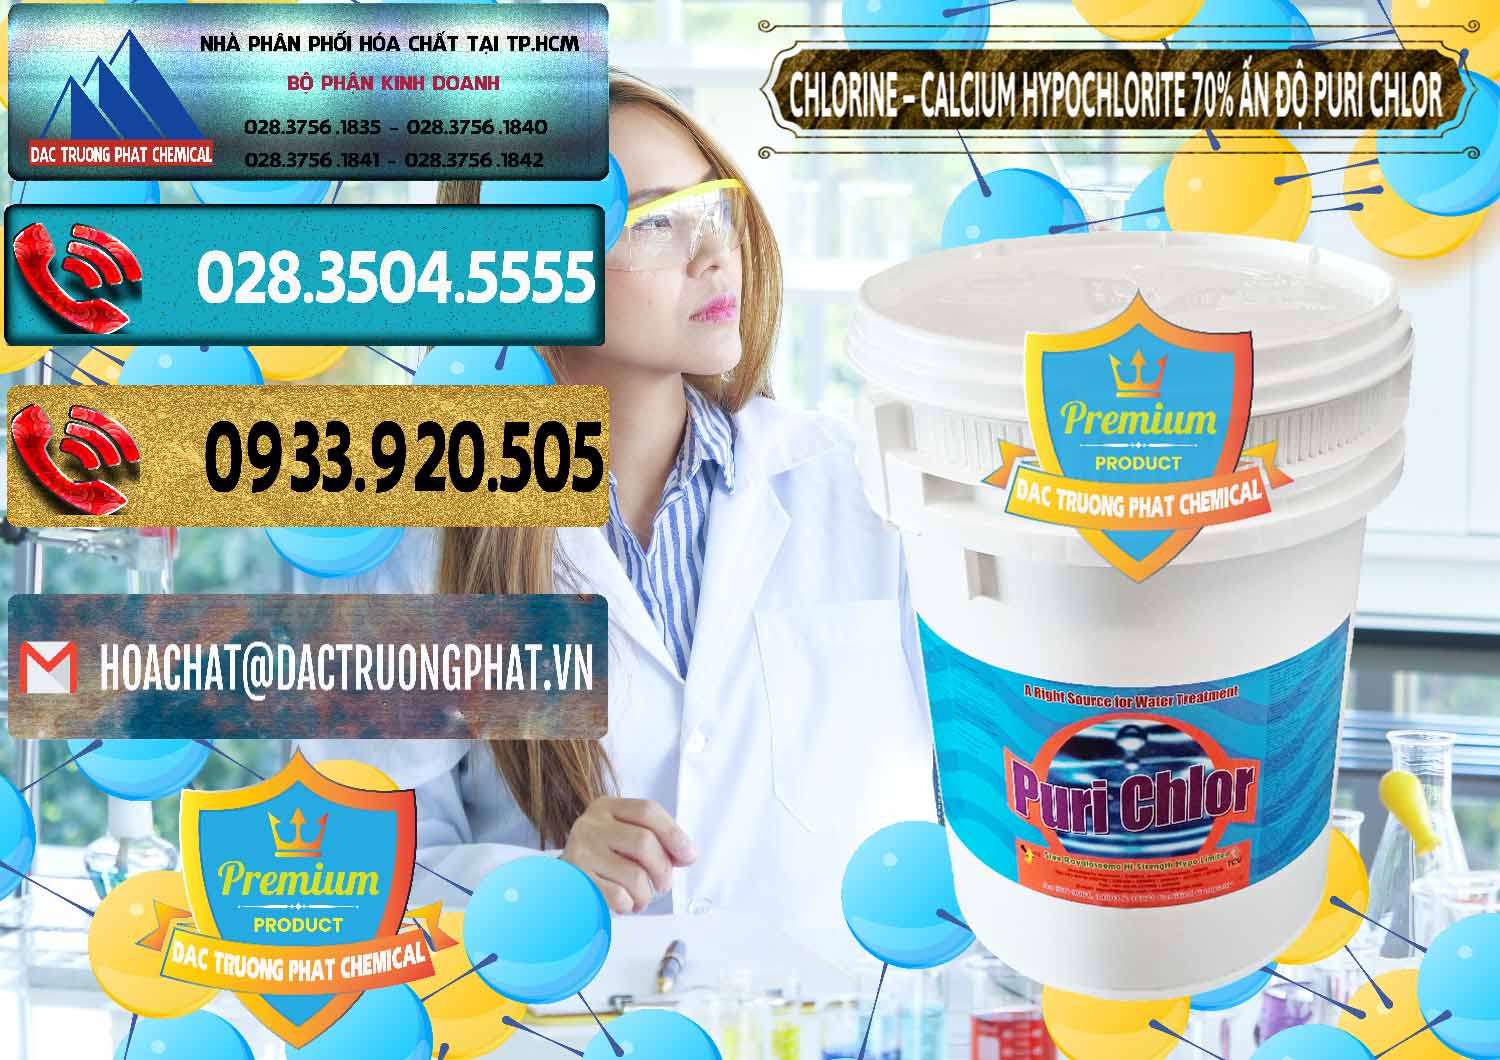 Cty nhập khẩu và bán Chlorine – Clorin 70% Puri Chlo Ấn Độ India - 0123 - Cty chuyên cung cấp ( kinh doanh ) hóa chất tại TP.HCM - hoachatdetnhuom.com